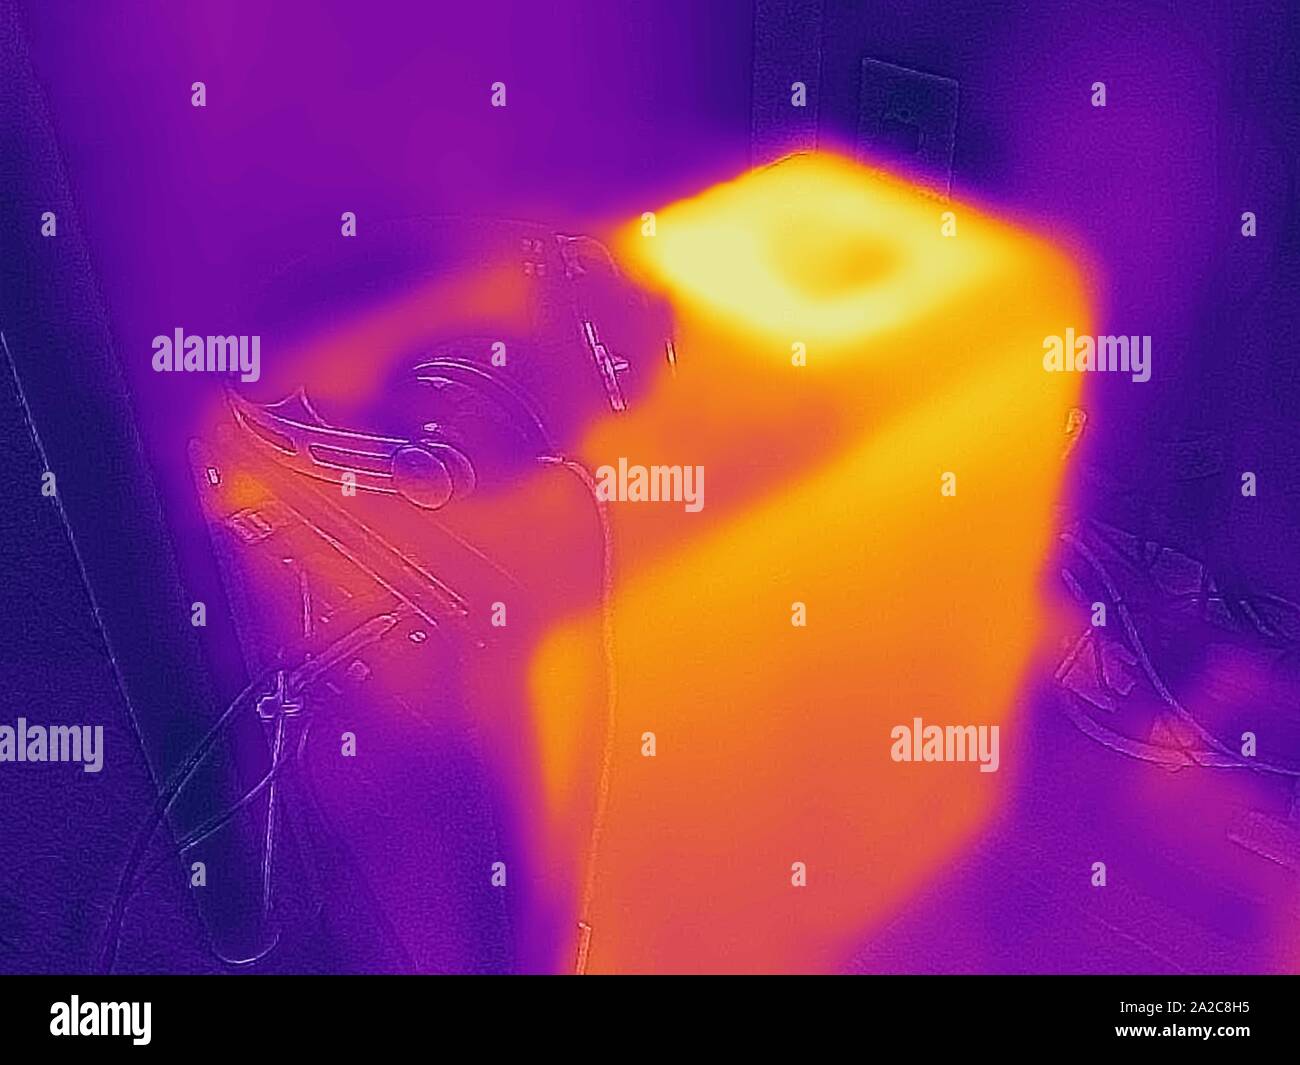 Thermografiebild der Wärmebildkamera mit Lichtbereichen, die höheren Temperaturen entsprechen und die Abwärme eines Desktop-PC-Towers während der Verwendung zeigen, San Ramon, Kalifornien, September 2019. () Stockfoto